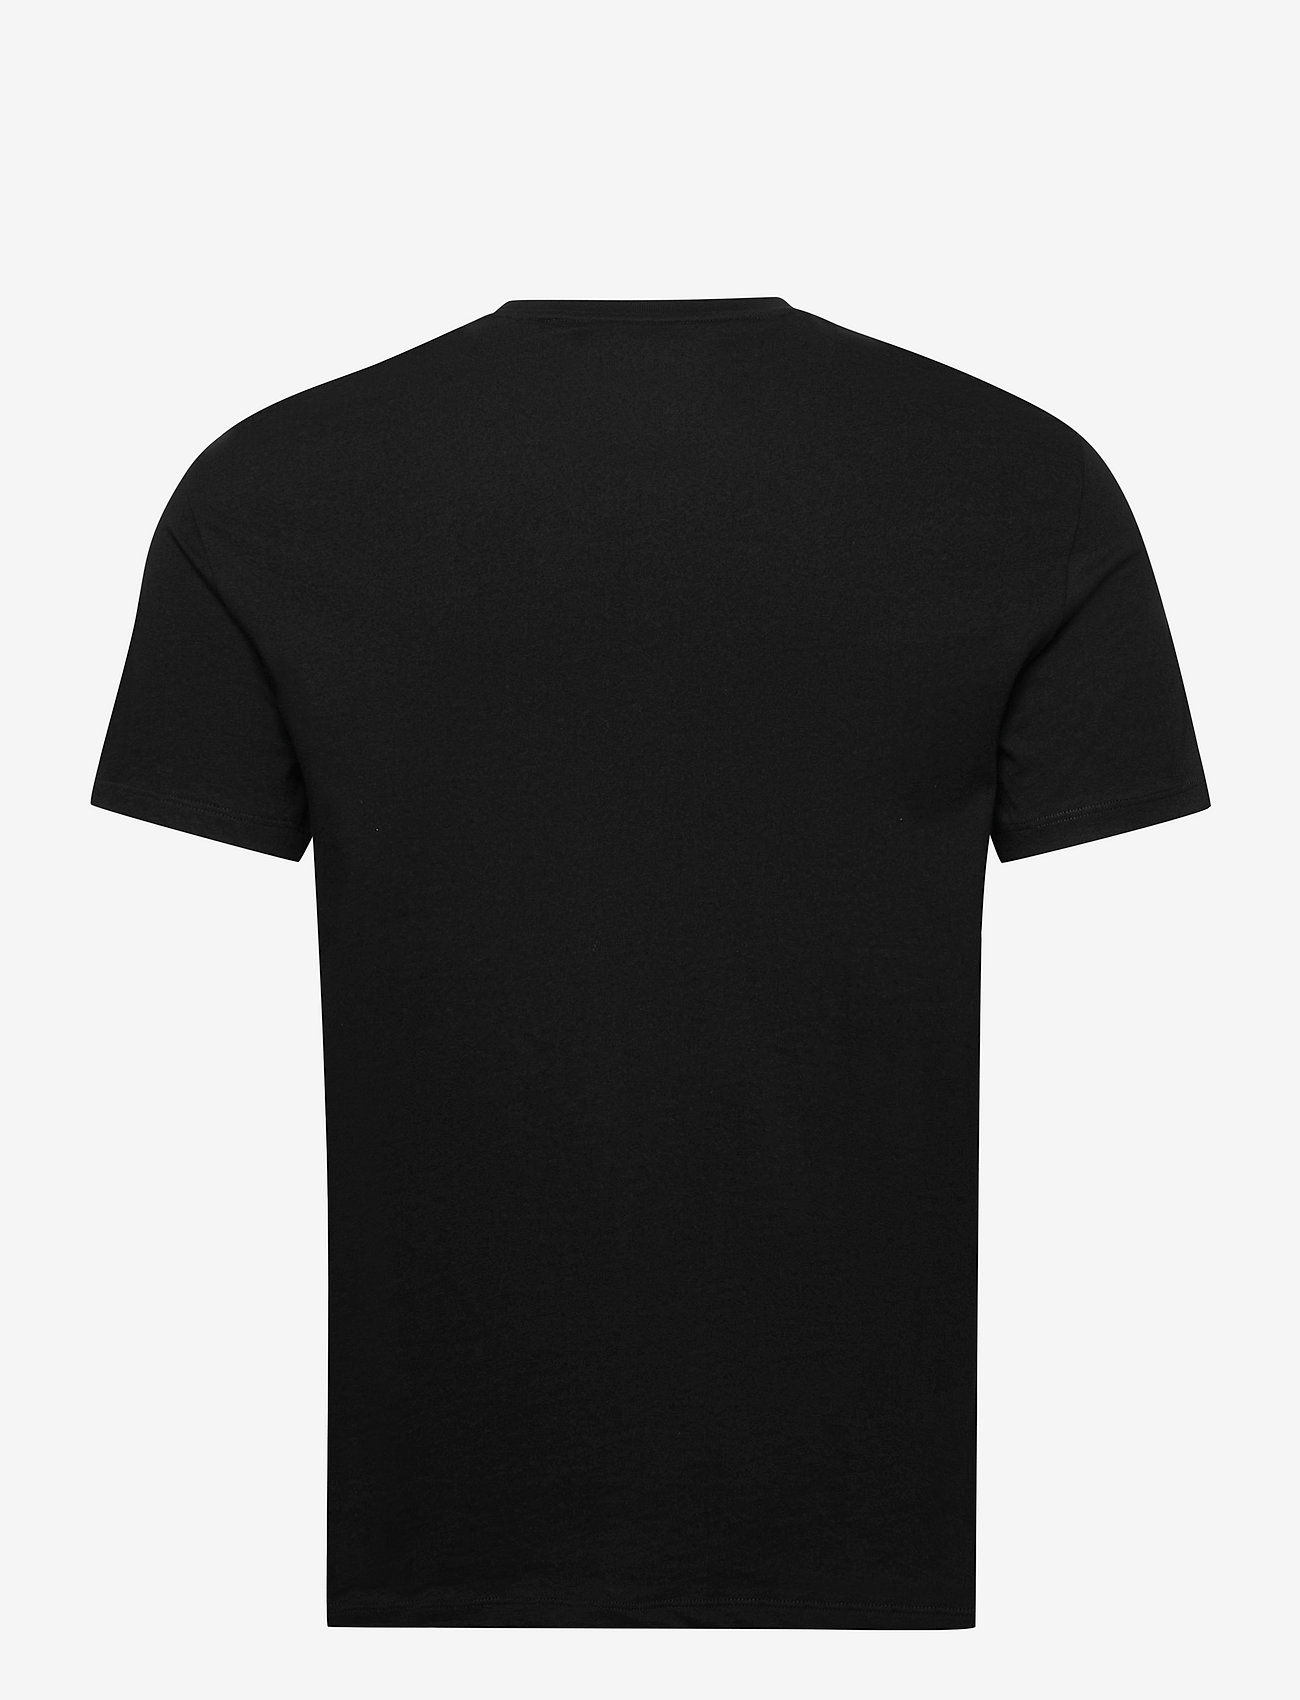 Armani Exchange - T-SHIRT - basis-t-skjorter - black - 1